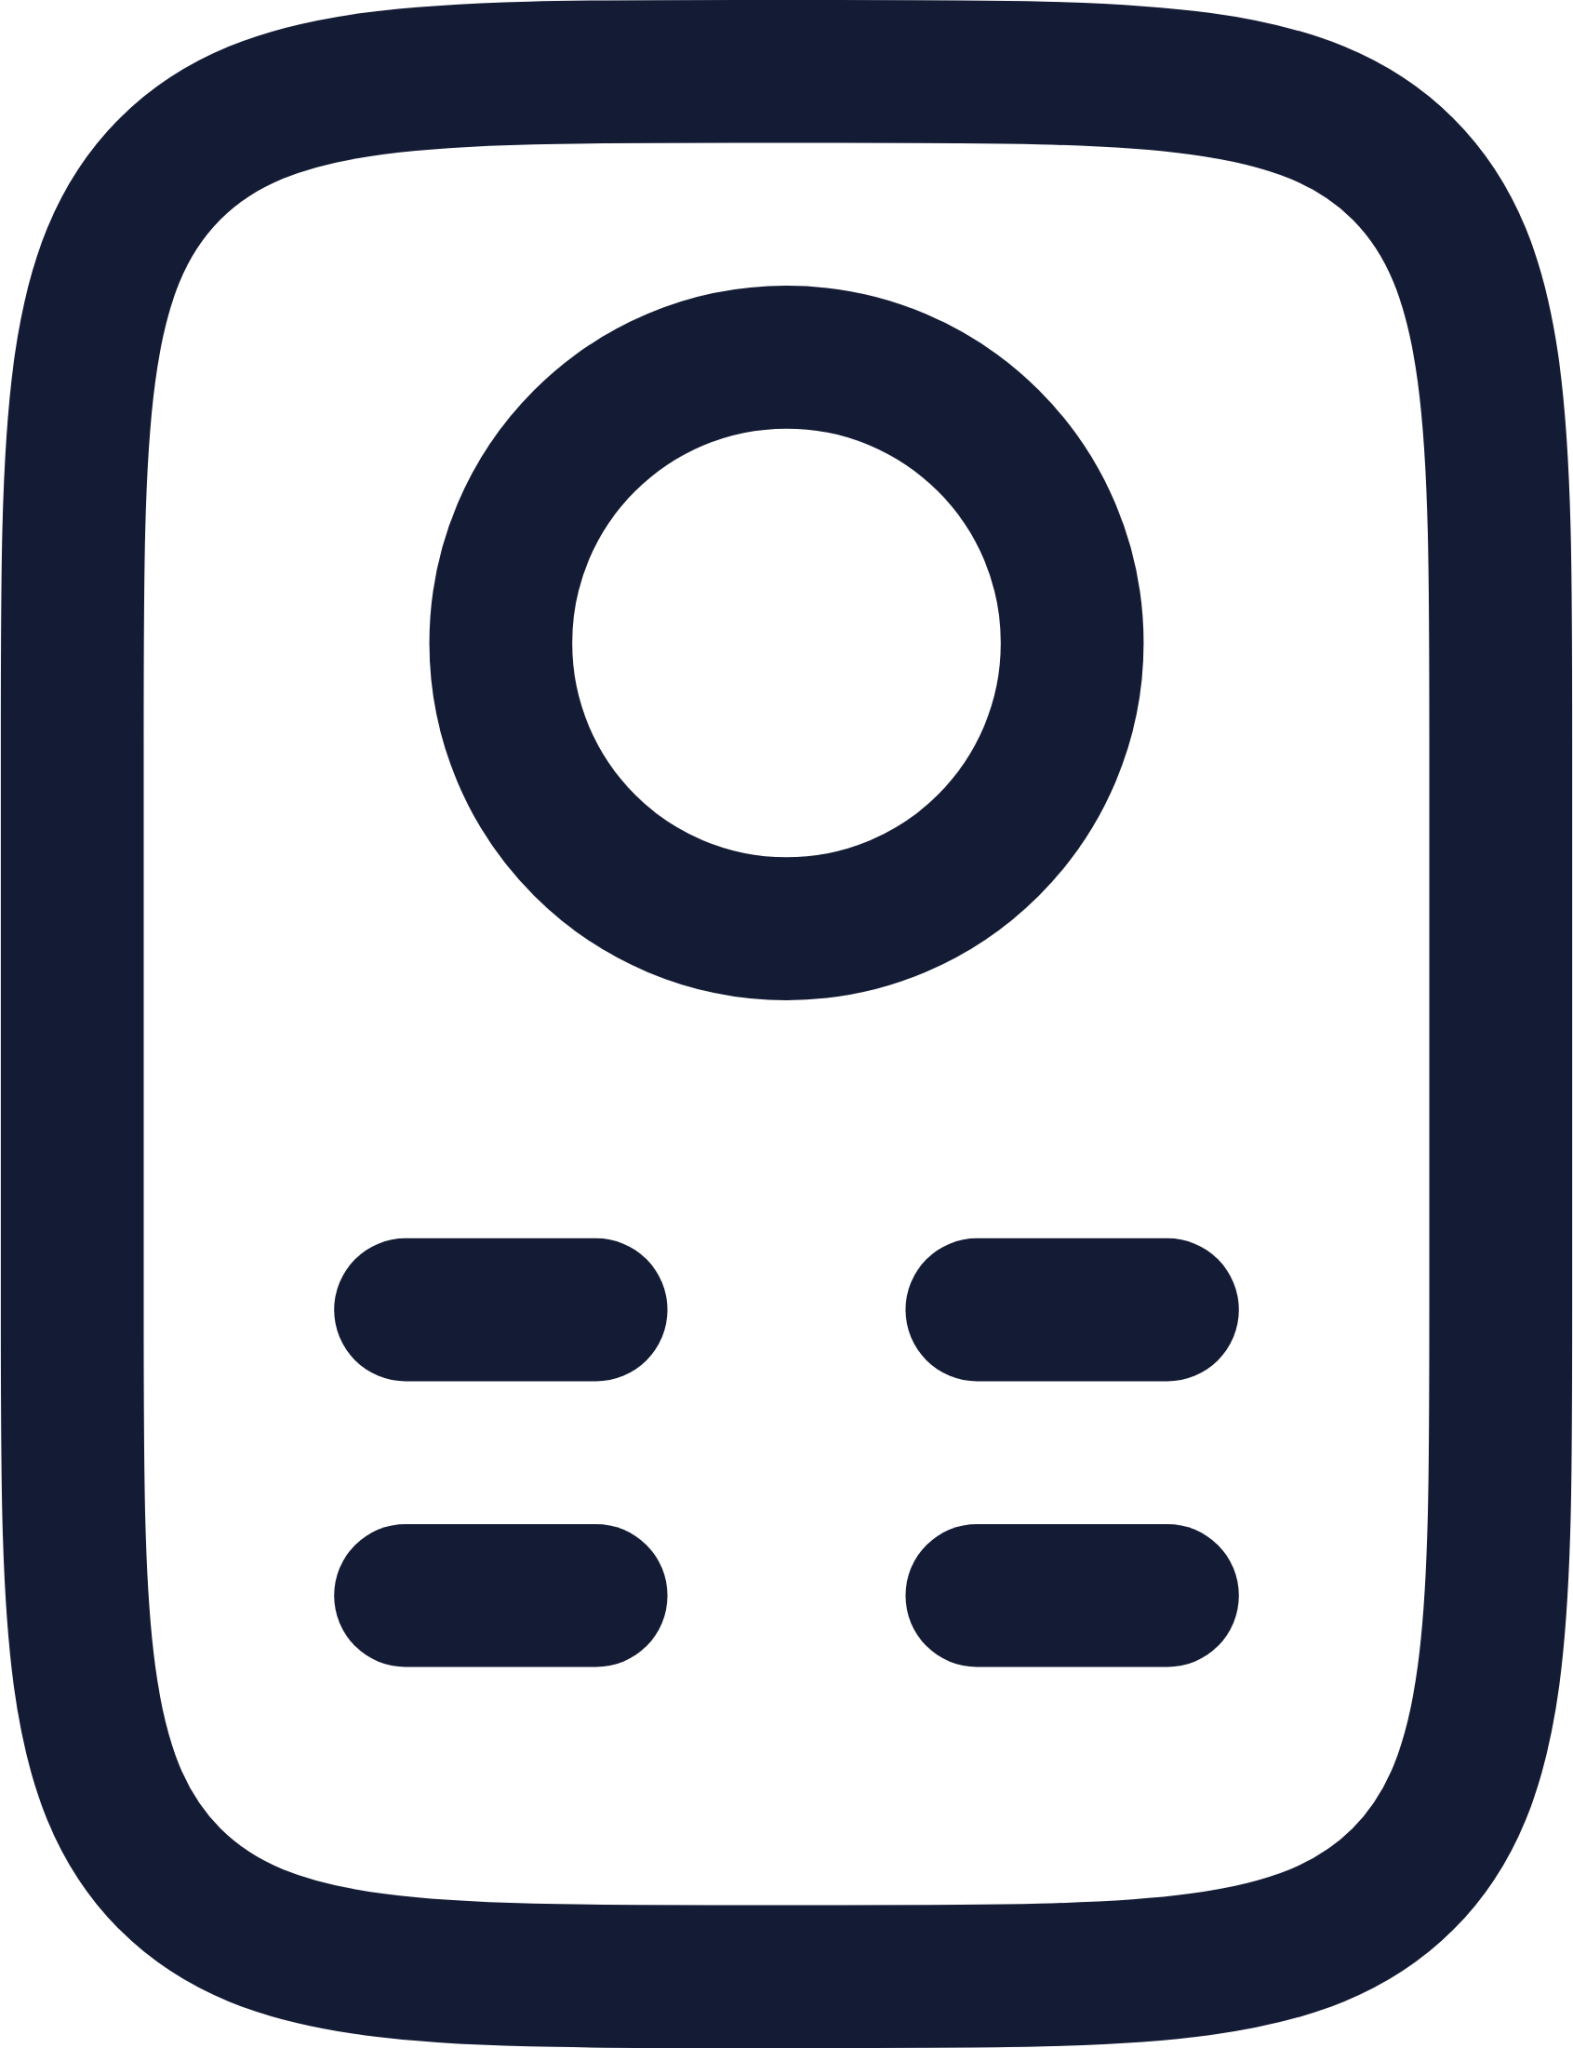 remote control icon